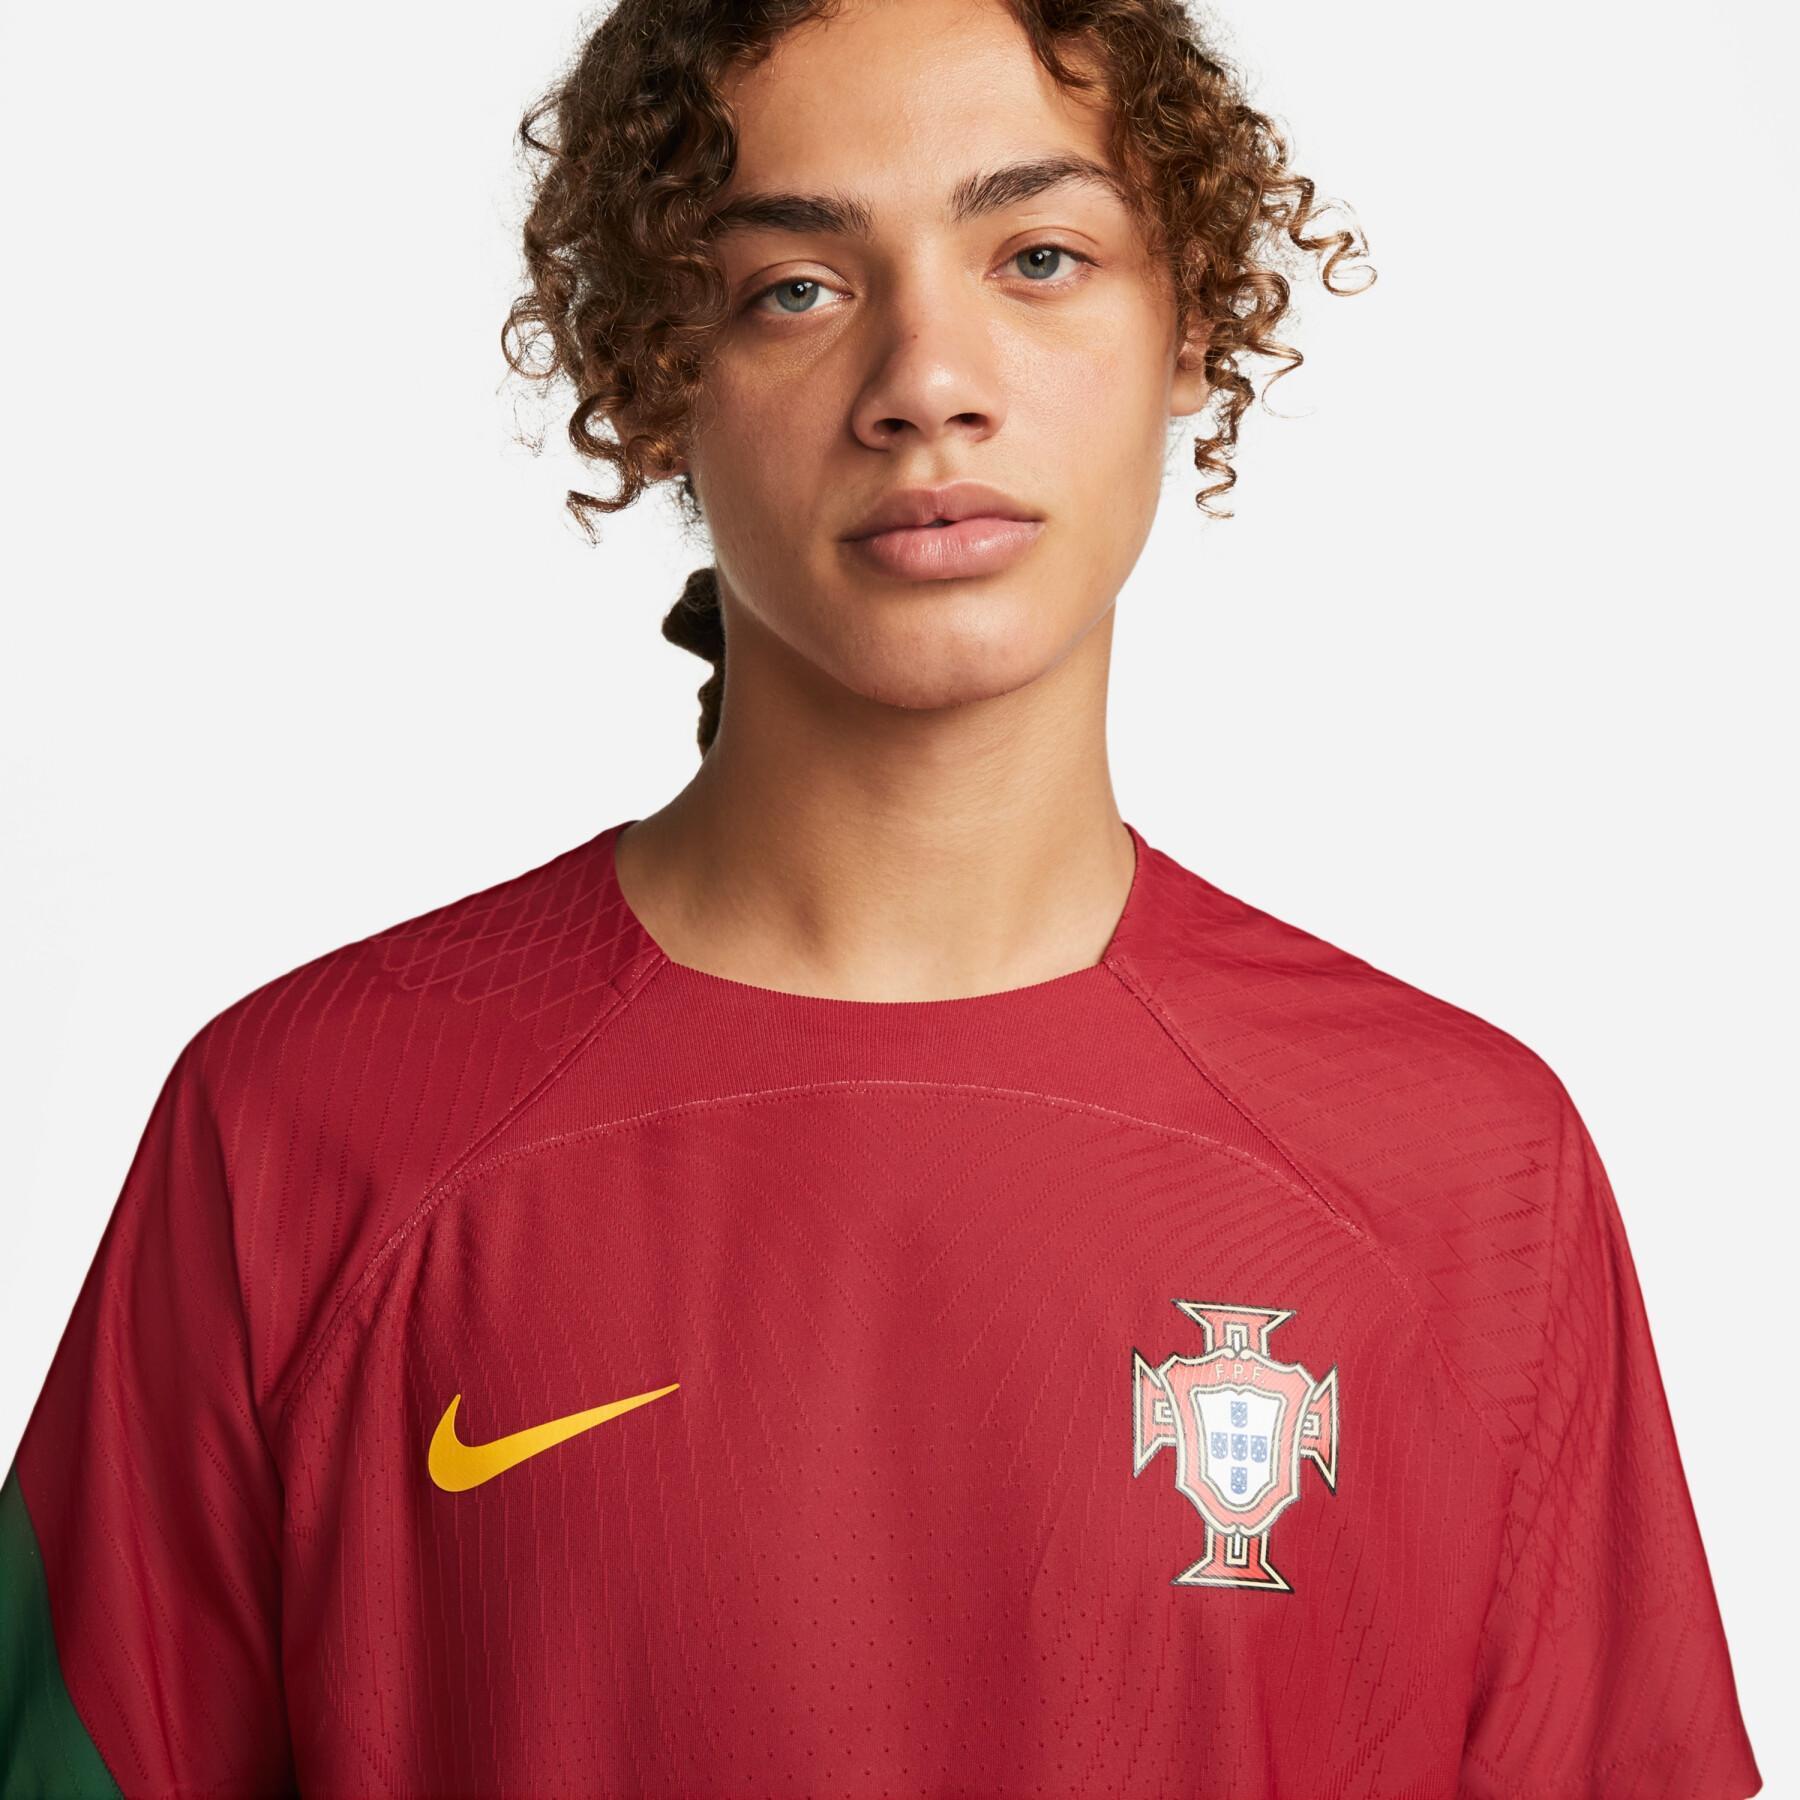 Autêntica camisola de casa do Campeonato do Mundo de 2022 Portugal